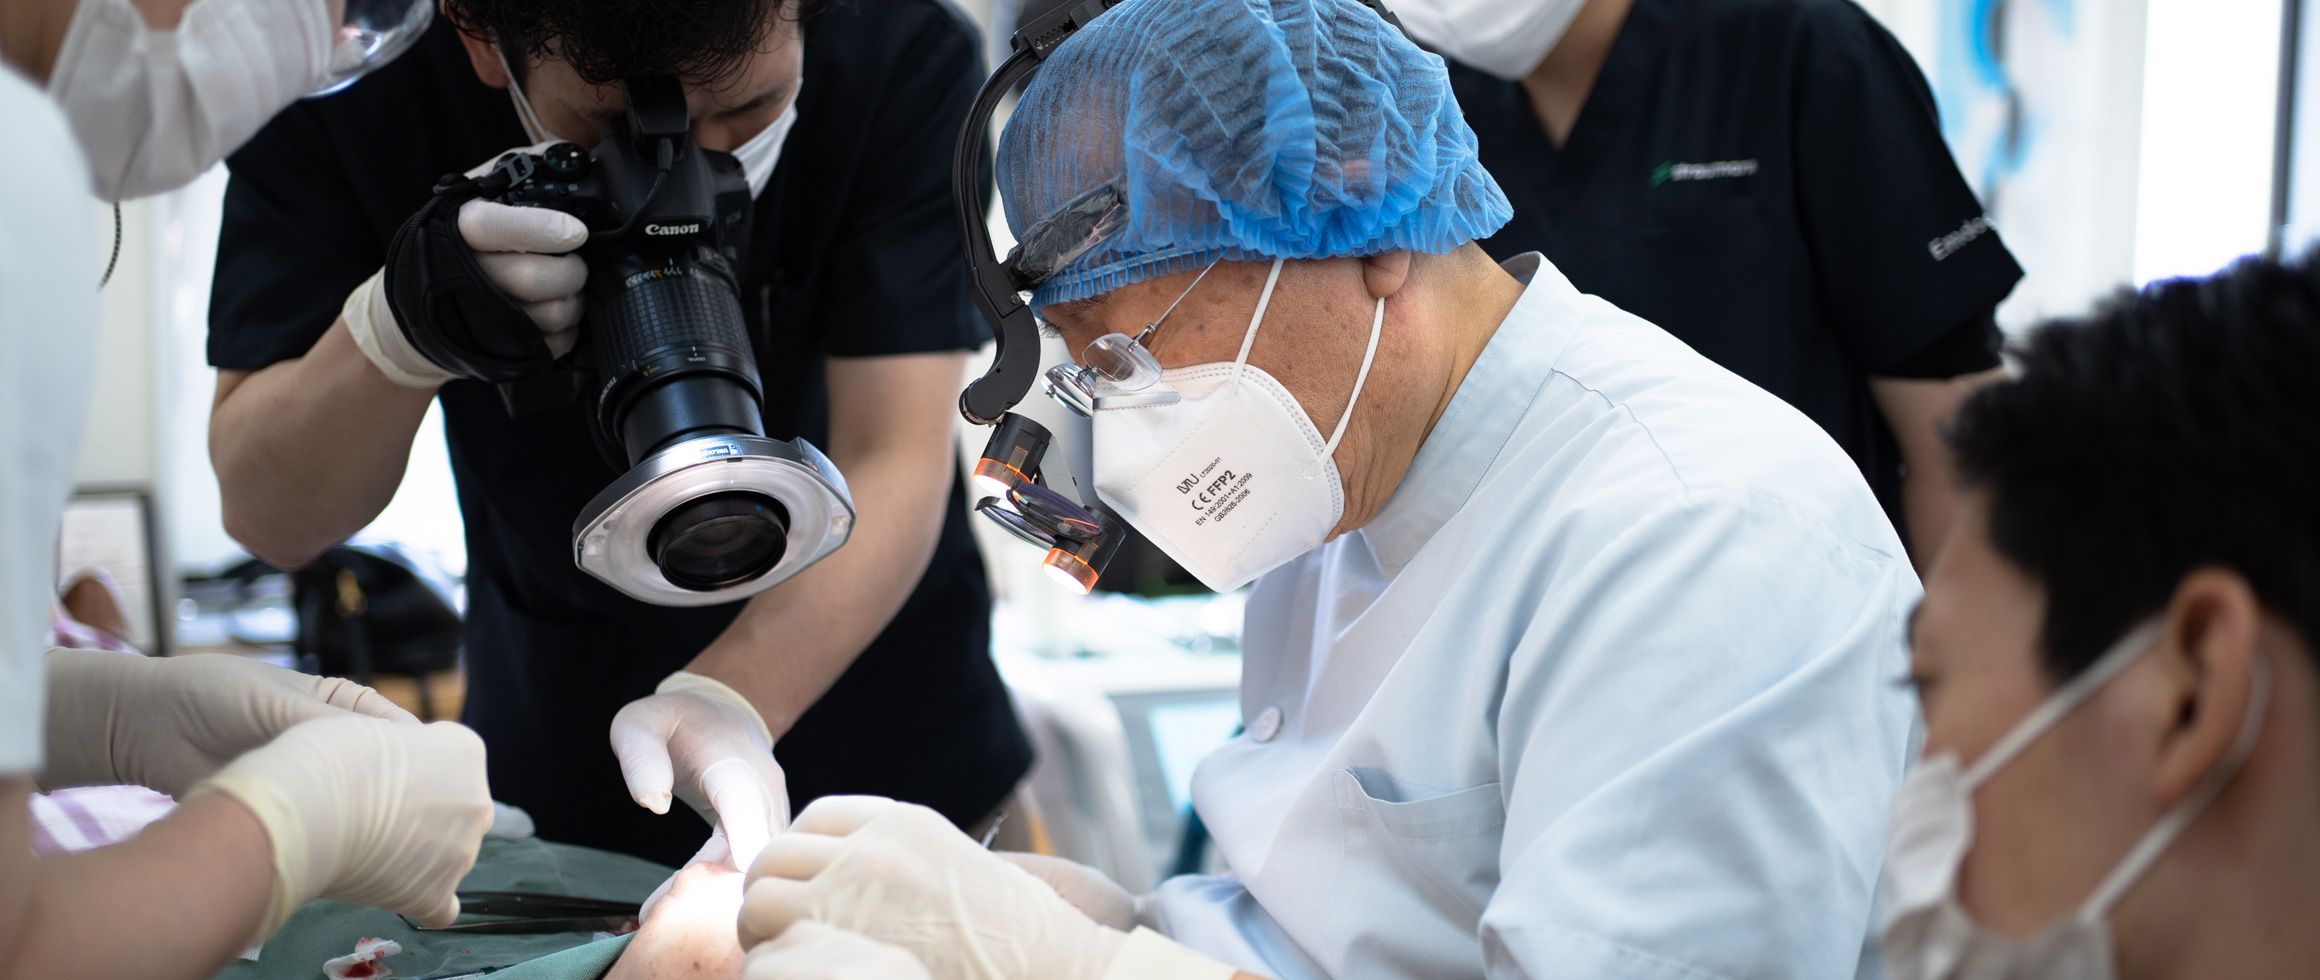 「日本歯周病学会認定研修施設」研修施設として認められた認定医院